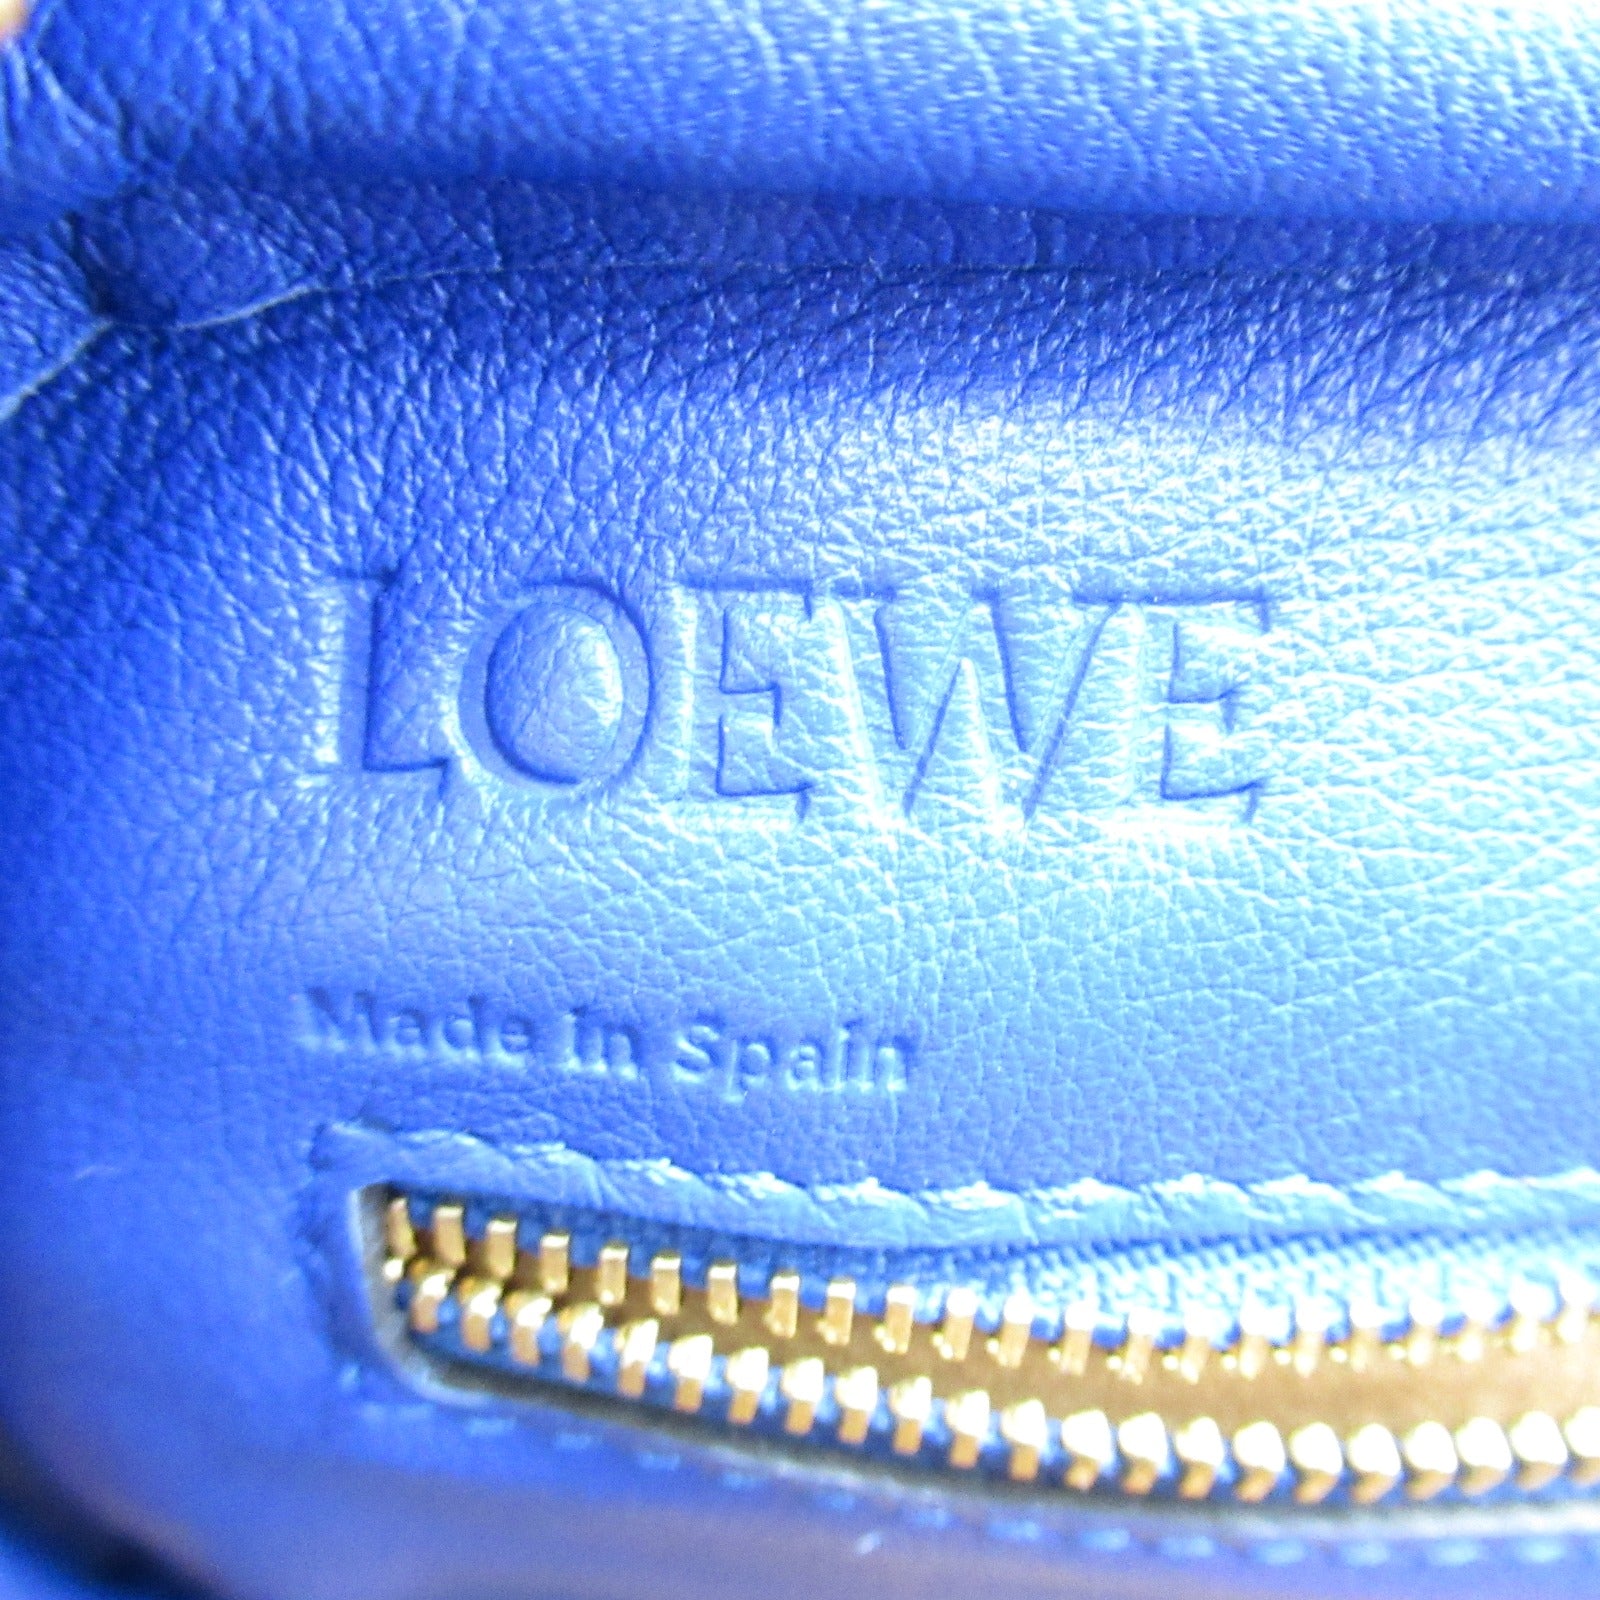 Loewe LOEWE Handbag Handbag Handbag, Handbags, Handbags, Handbags, Handbags, Handbags, Handbags, Handbags, Handbags, Handbags, Handbags, Handbags, Handbags